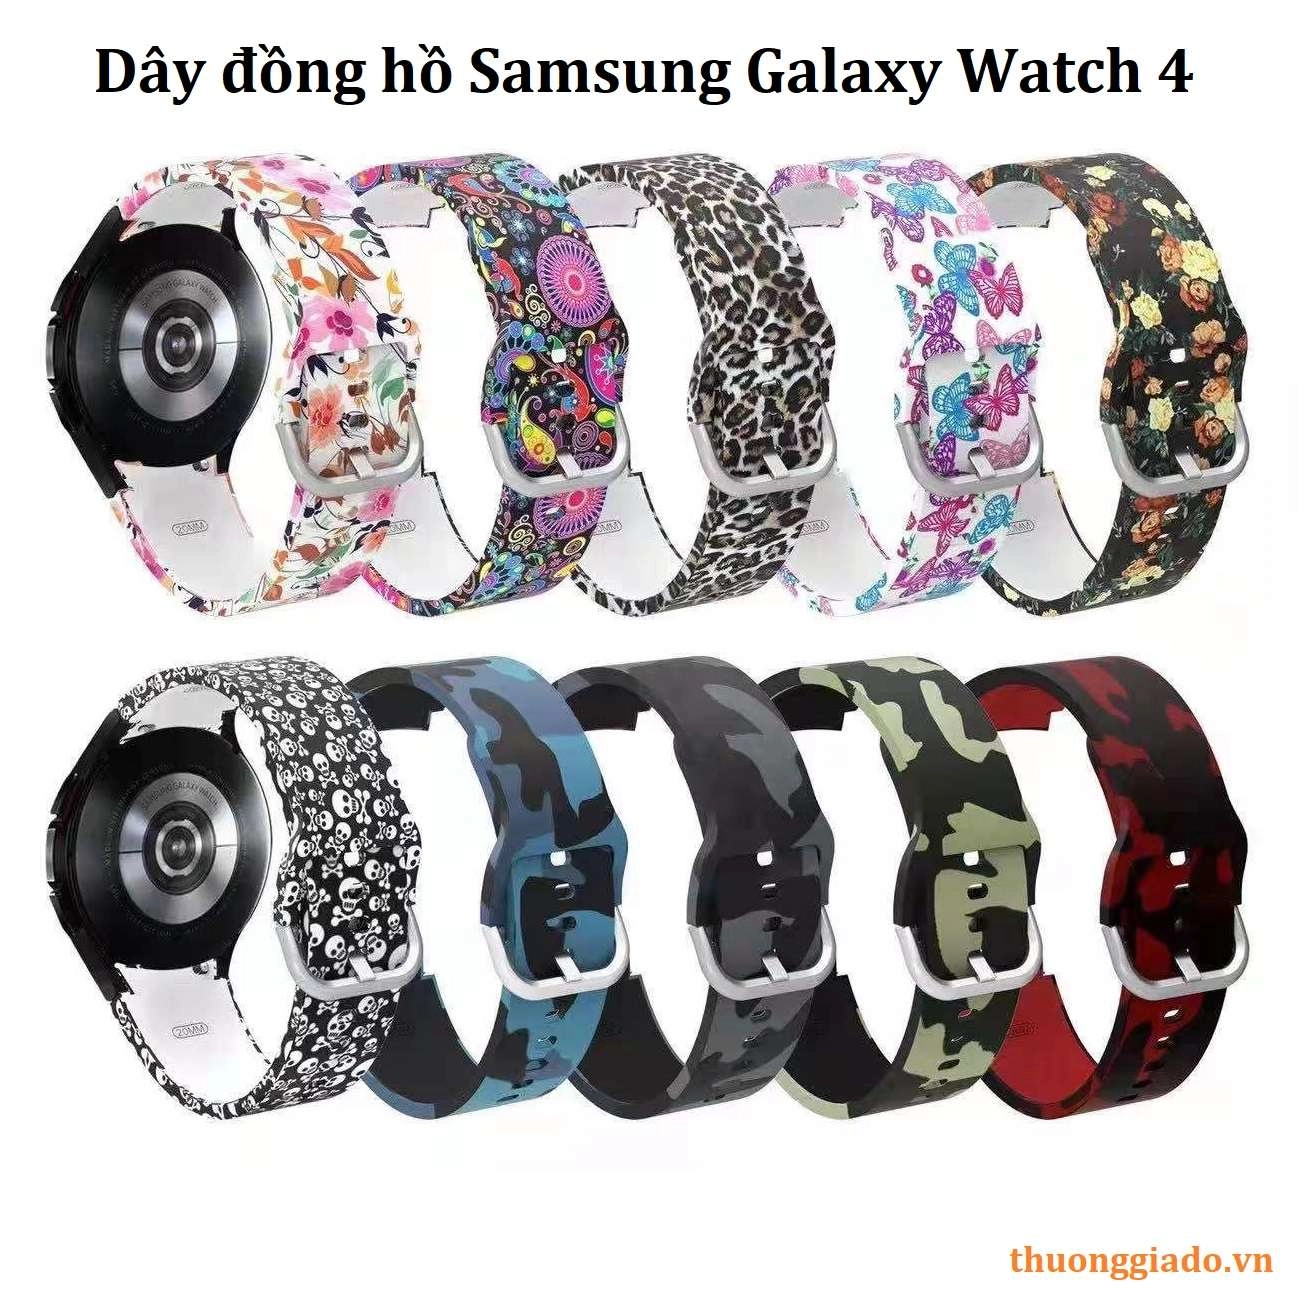 Dây Đồng Hồ Samsung Galaxy Watch 4 Họa Tiết Thời Trang | Giao Hàng Thu Tiền  Trên Mọi Miền Tổ Quốc